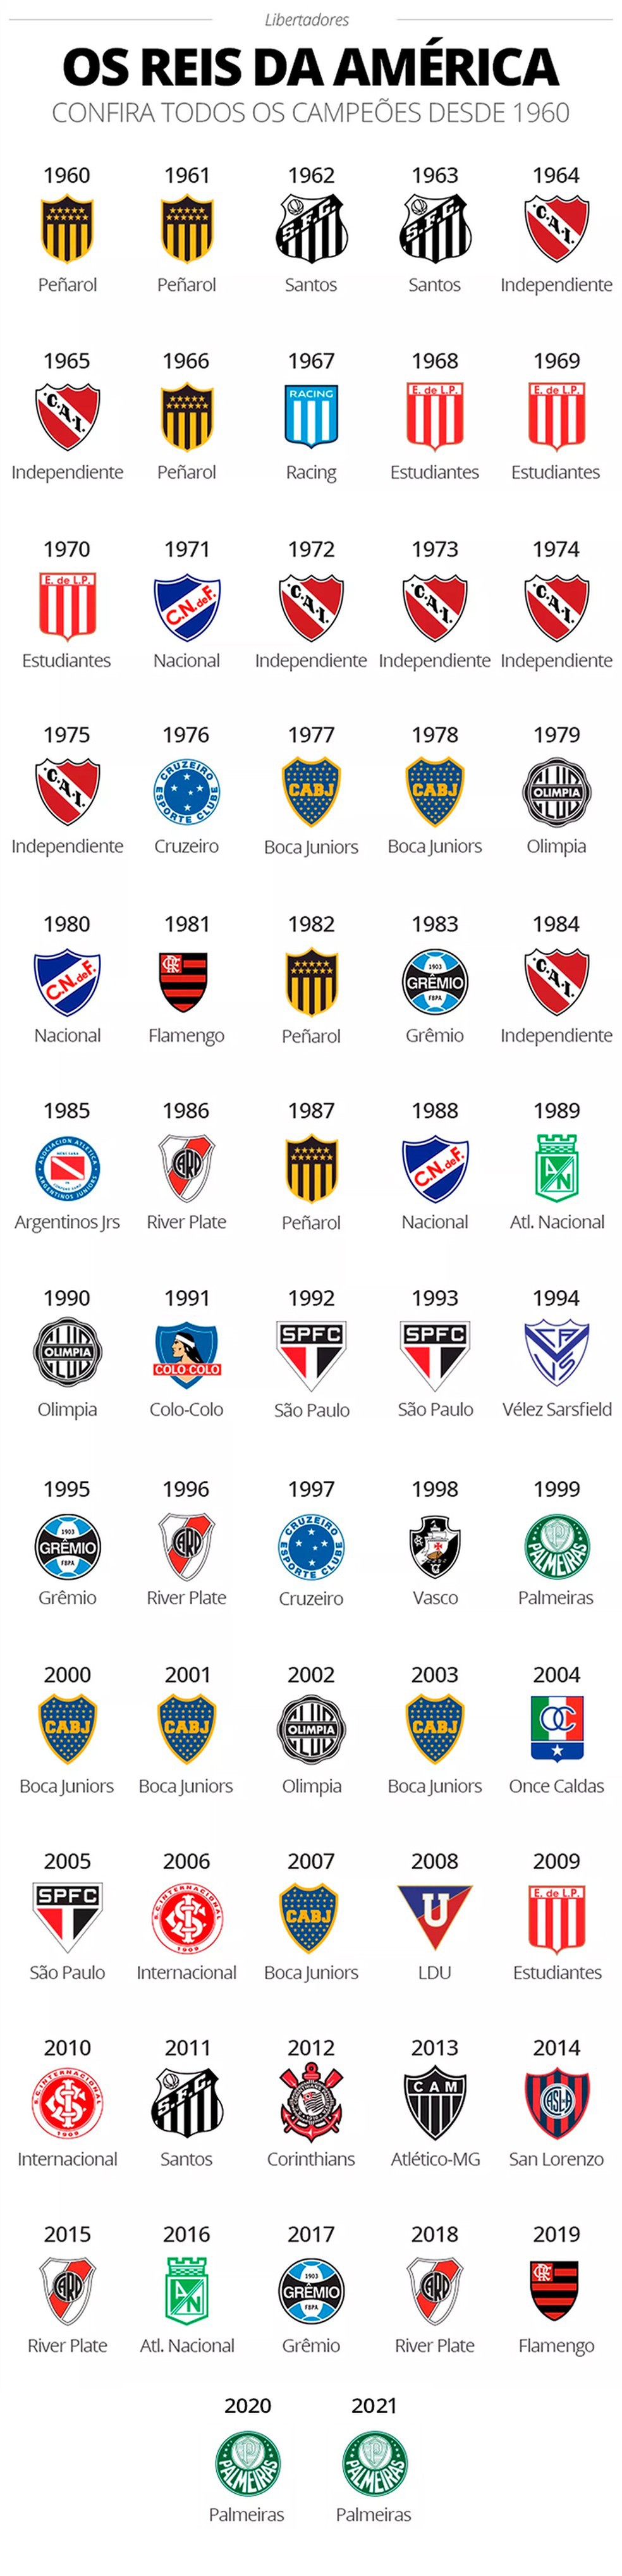 Quantas vezes o Palmeiras venceu a Libertadores?